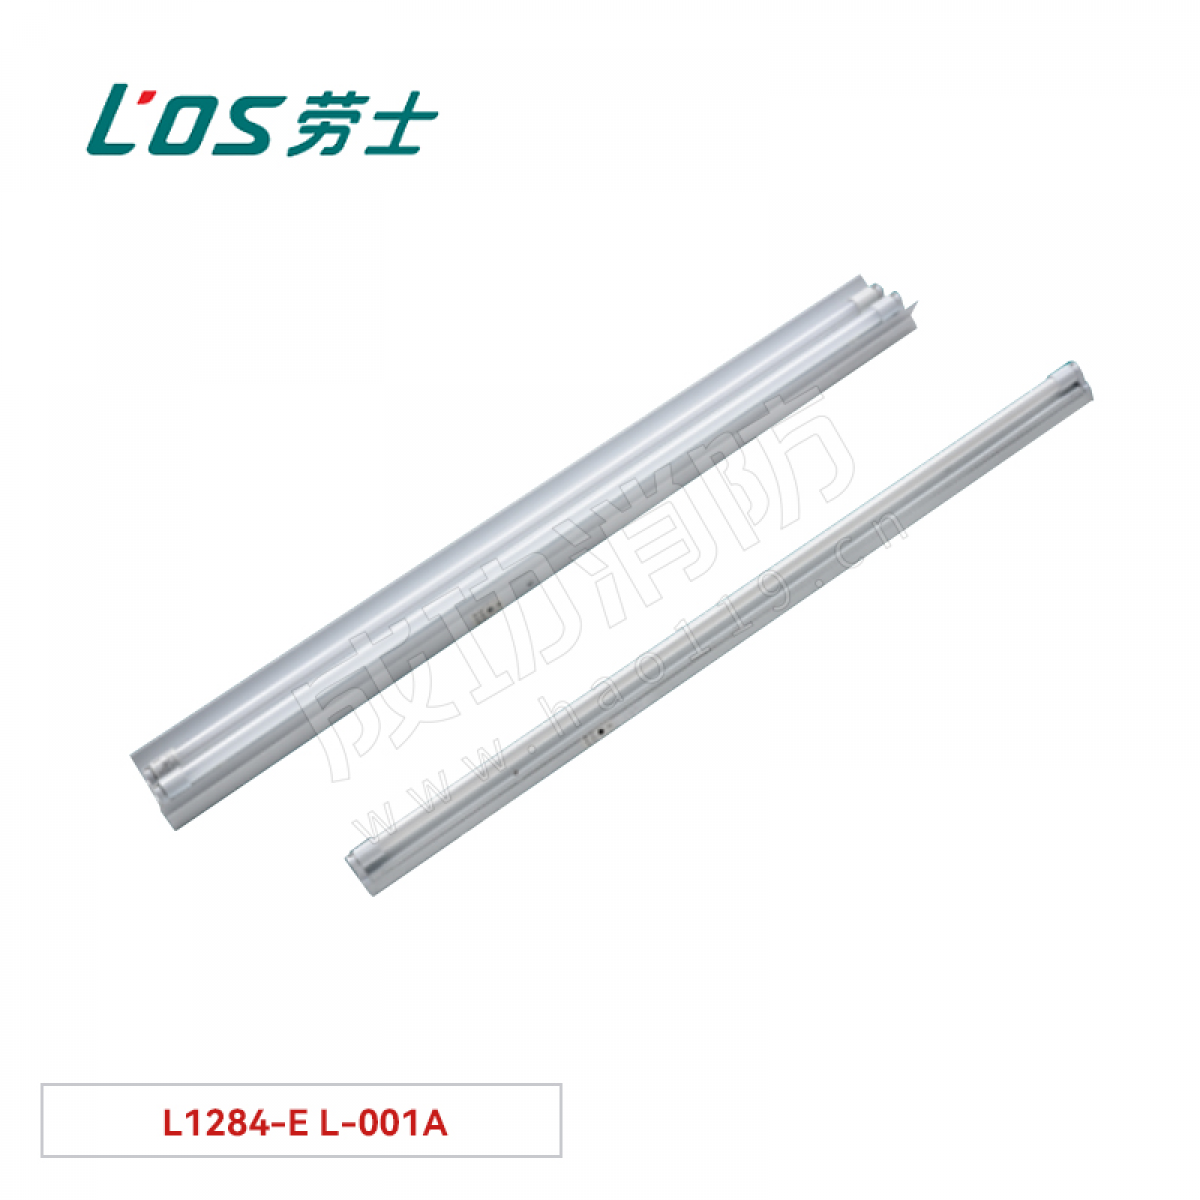 劳士 双管荧光灯(吊装式/墙装式) L1284-E L-001A